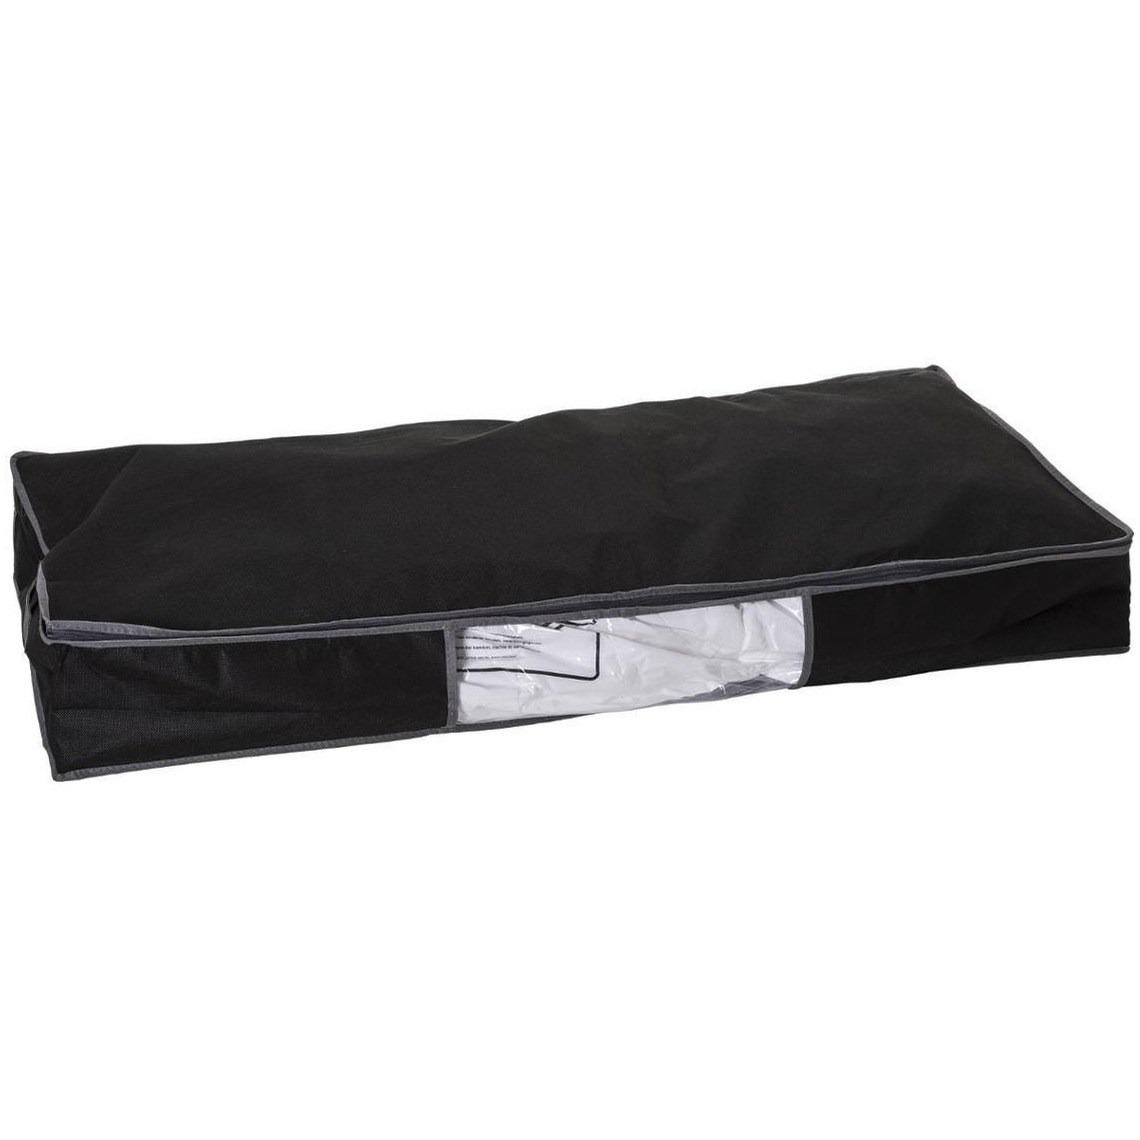 Dekbed-kussen opberghoes zwart met vacuumzak 98 x 45 x 15 cm